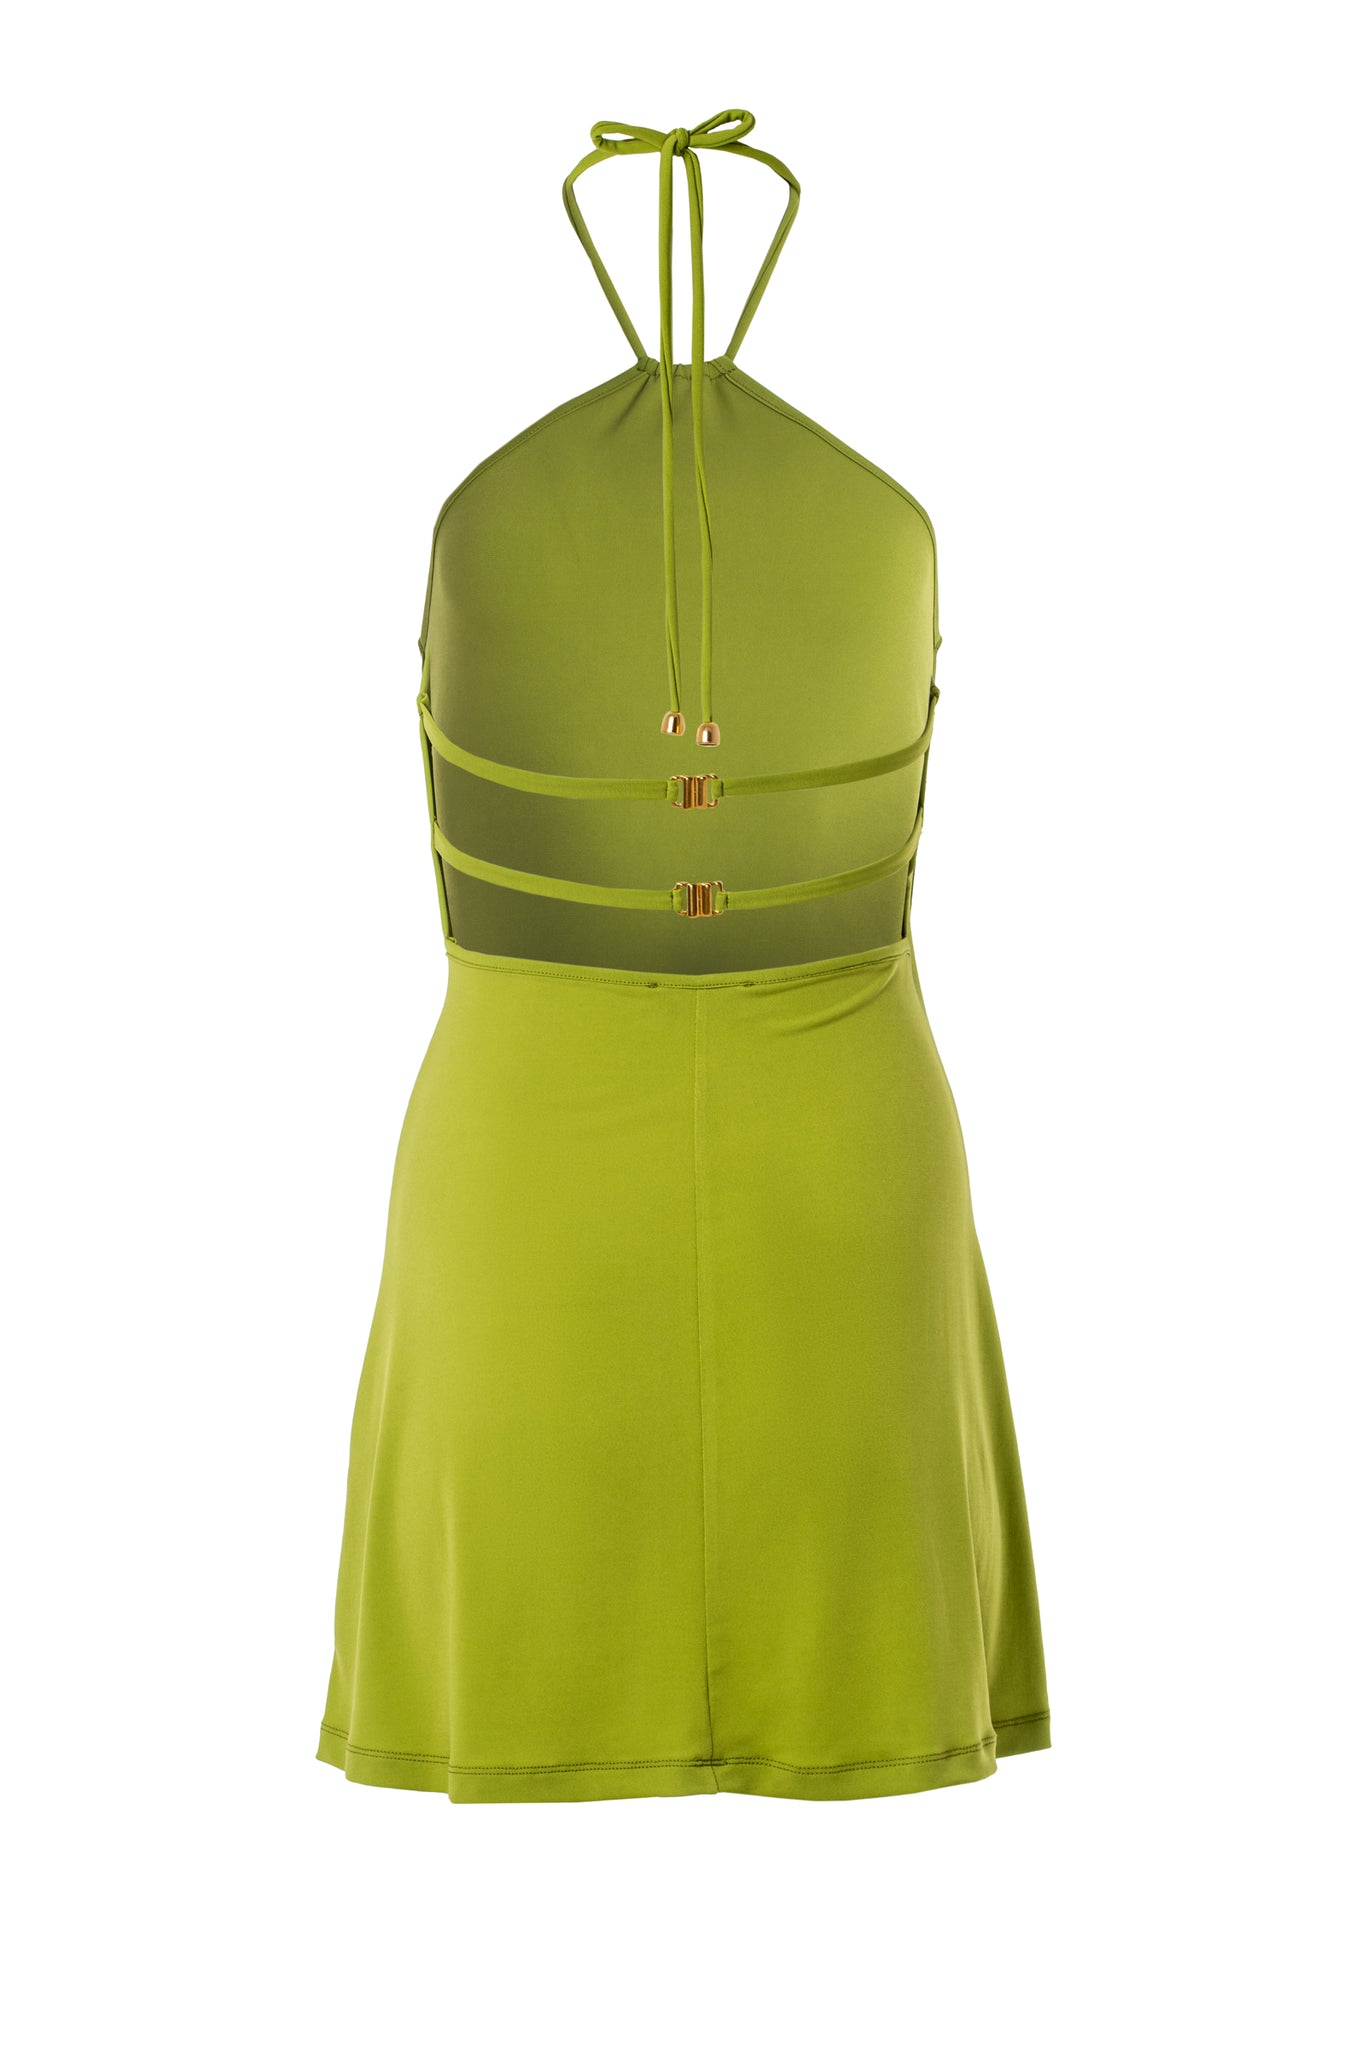 Halter Mini Dress in Lime Green